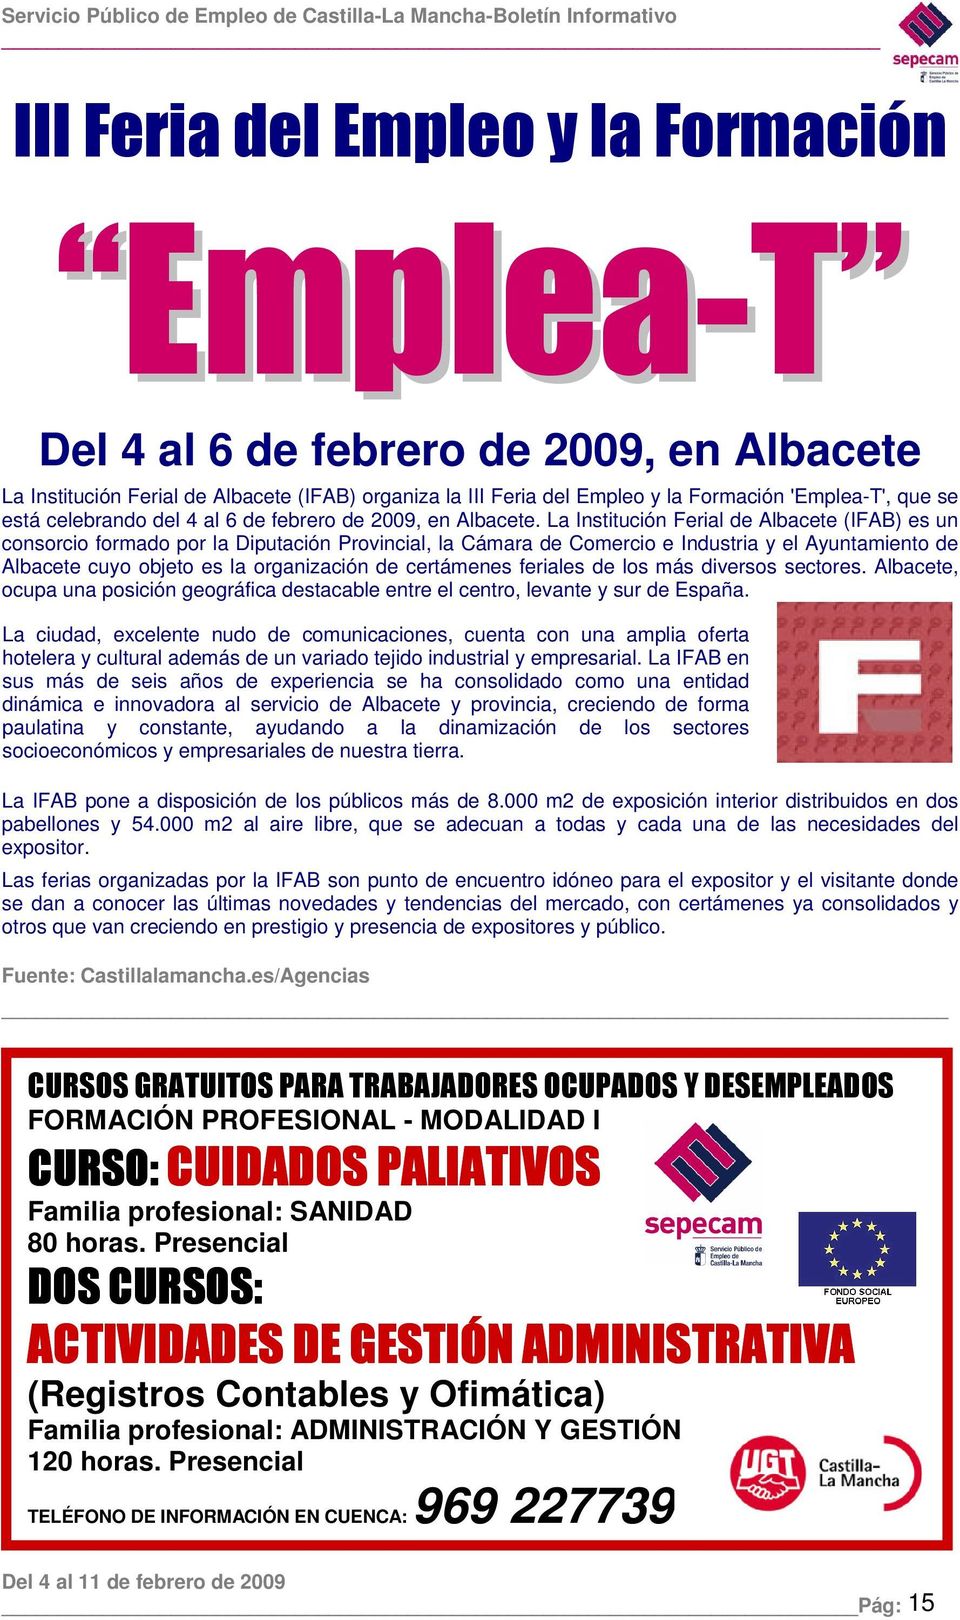 La Institución Ferial de Albacete (IFAB) es un consorcio formado por la Diputación Provincial, la Cámara de Comercio e Industria y el Ayuntamiento de Albacete cuyo objeto es la organización de